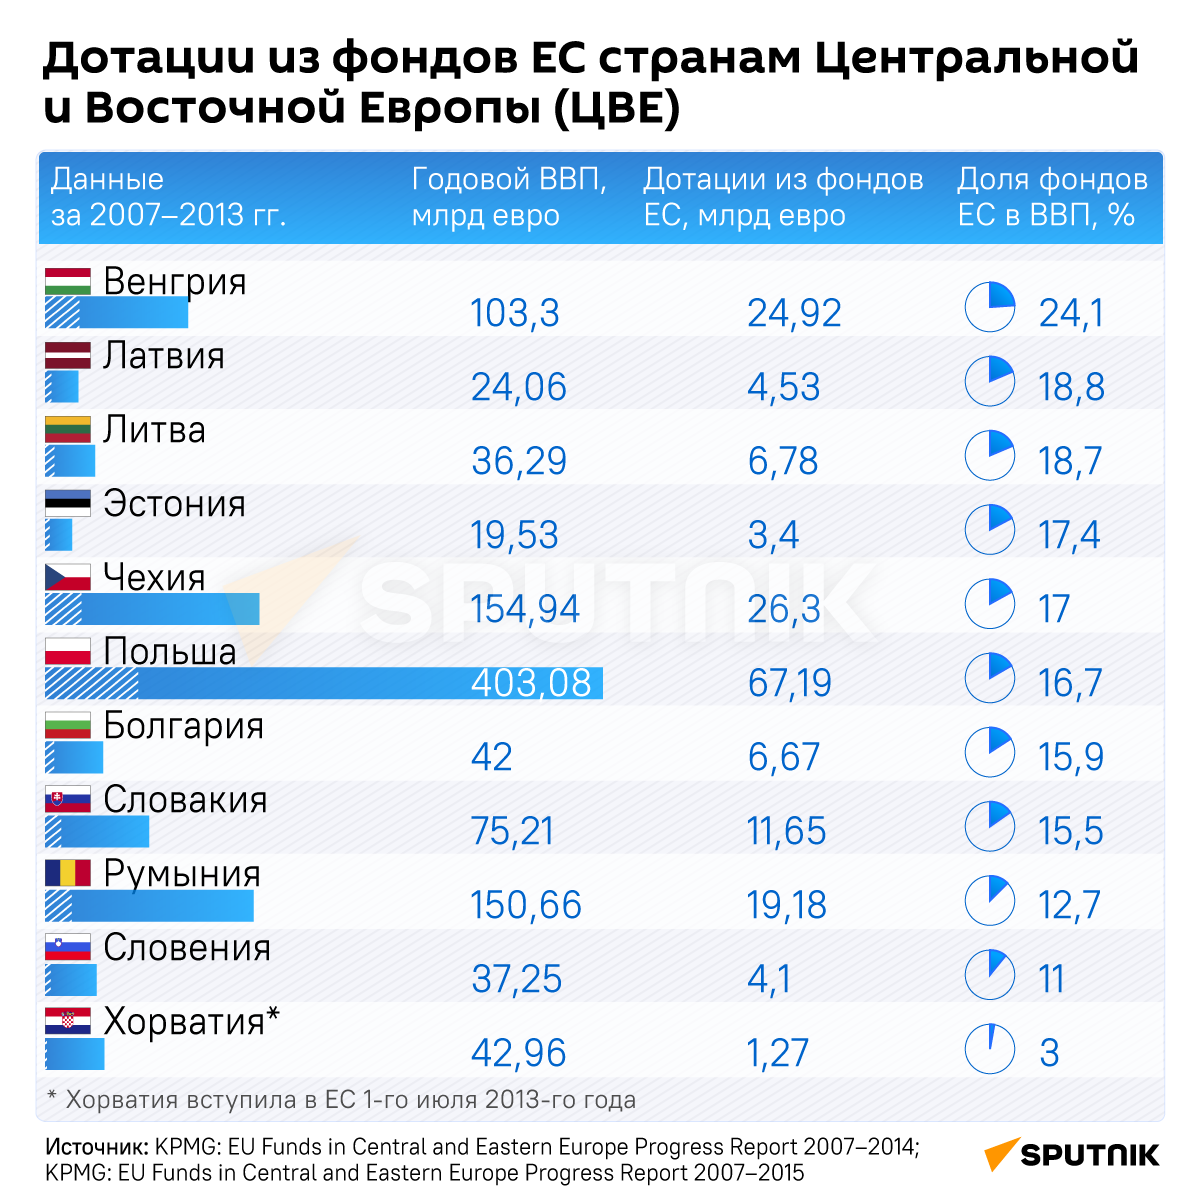 Дотации из фондов ЕС странам Центральной и Восточной Европы инфографика - Sputnik Узбекистан